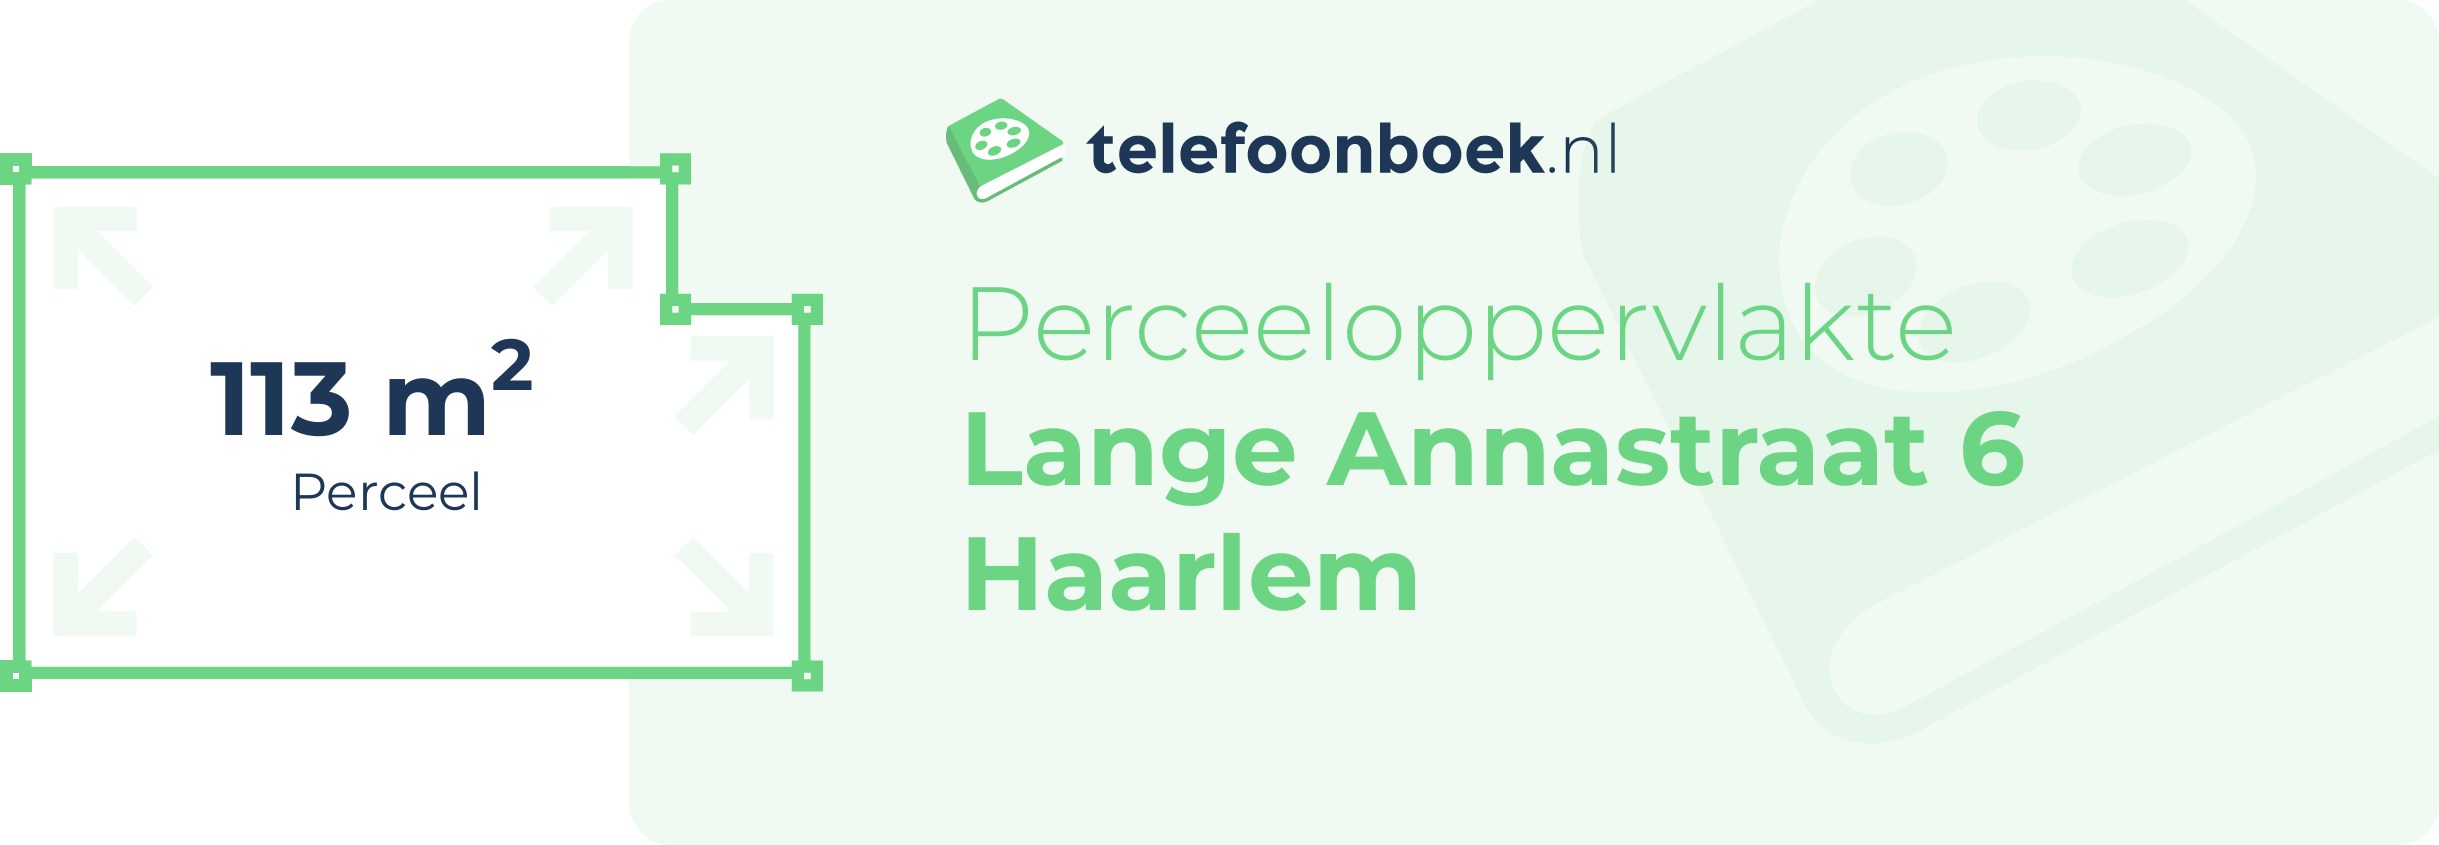 Perceeloppervlakte Lange Annastraat 6 Haarlem